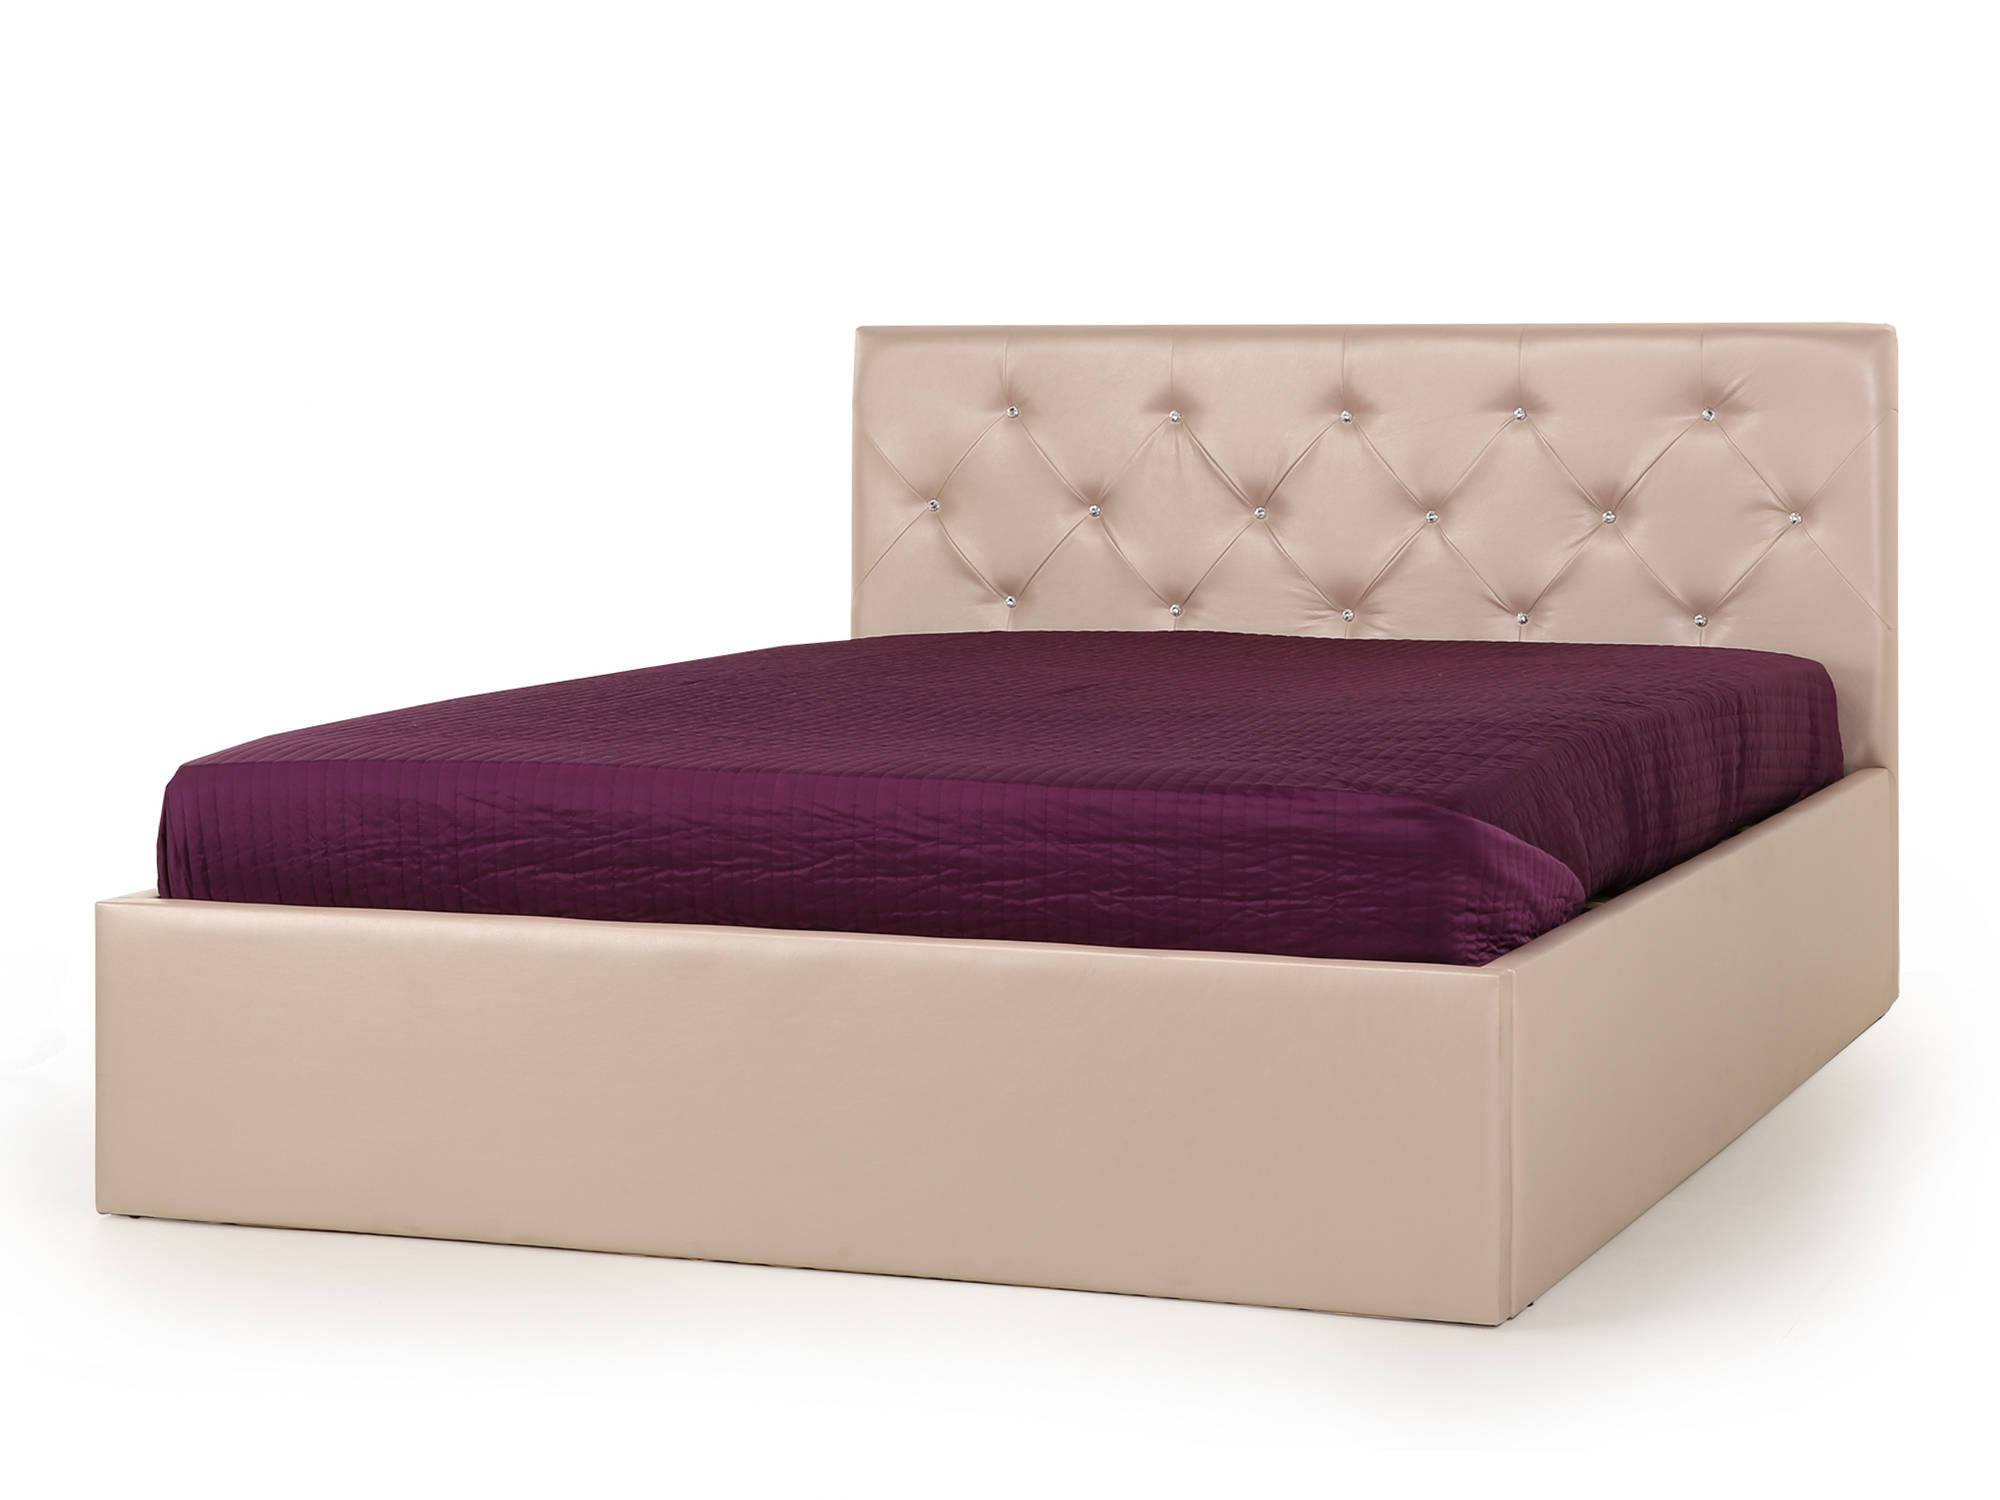 Кровать Gloria (140х200) Розово-бежевый перламутровый, Массив, ДСП кровать сакура 140х200 сонома бежевый массив хвойных пород дерева